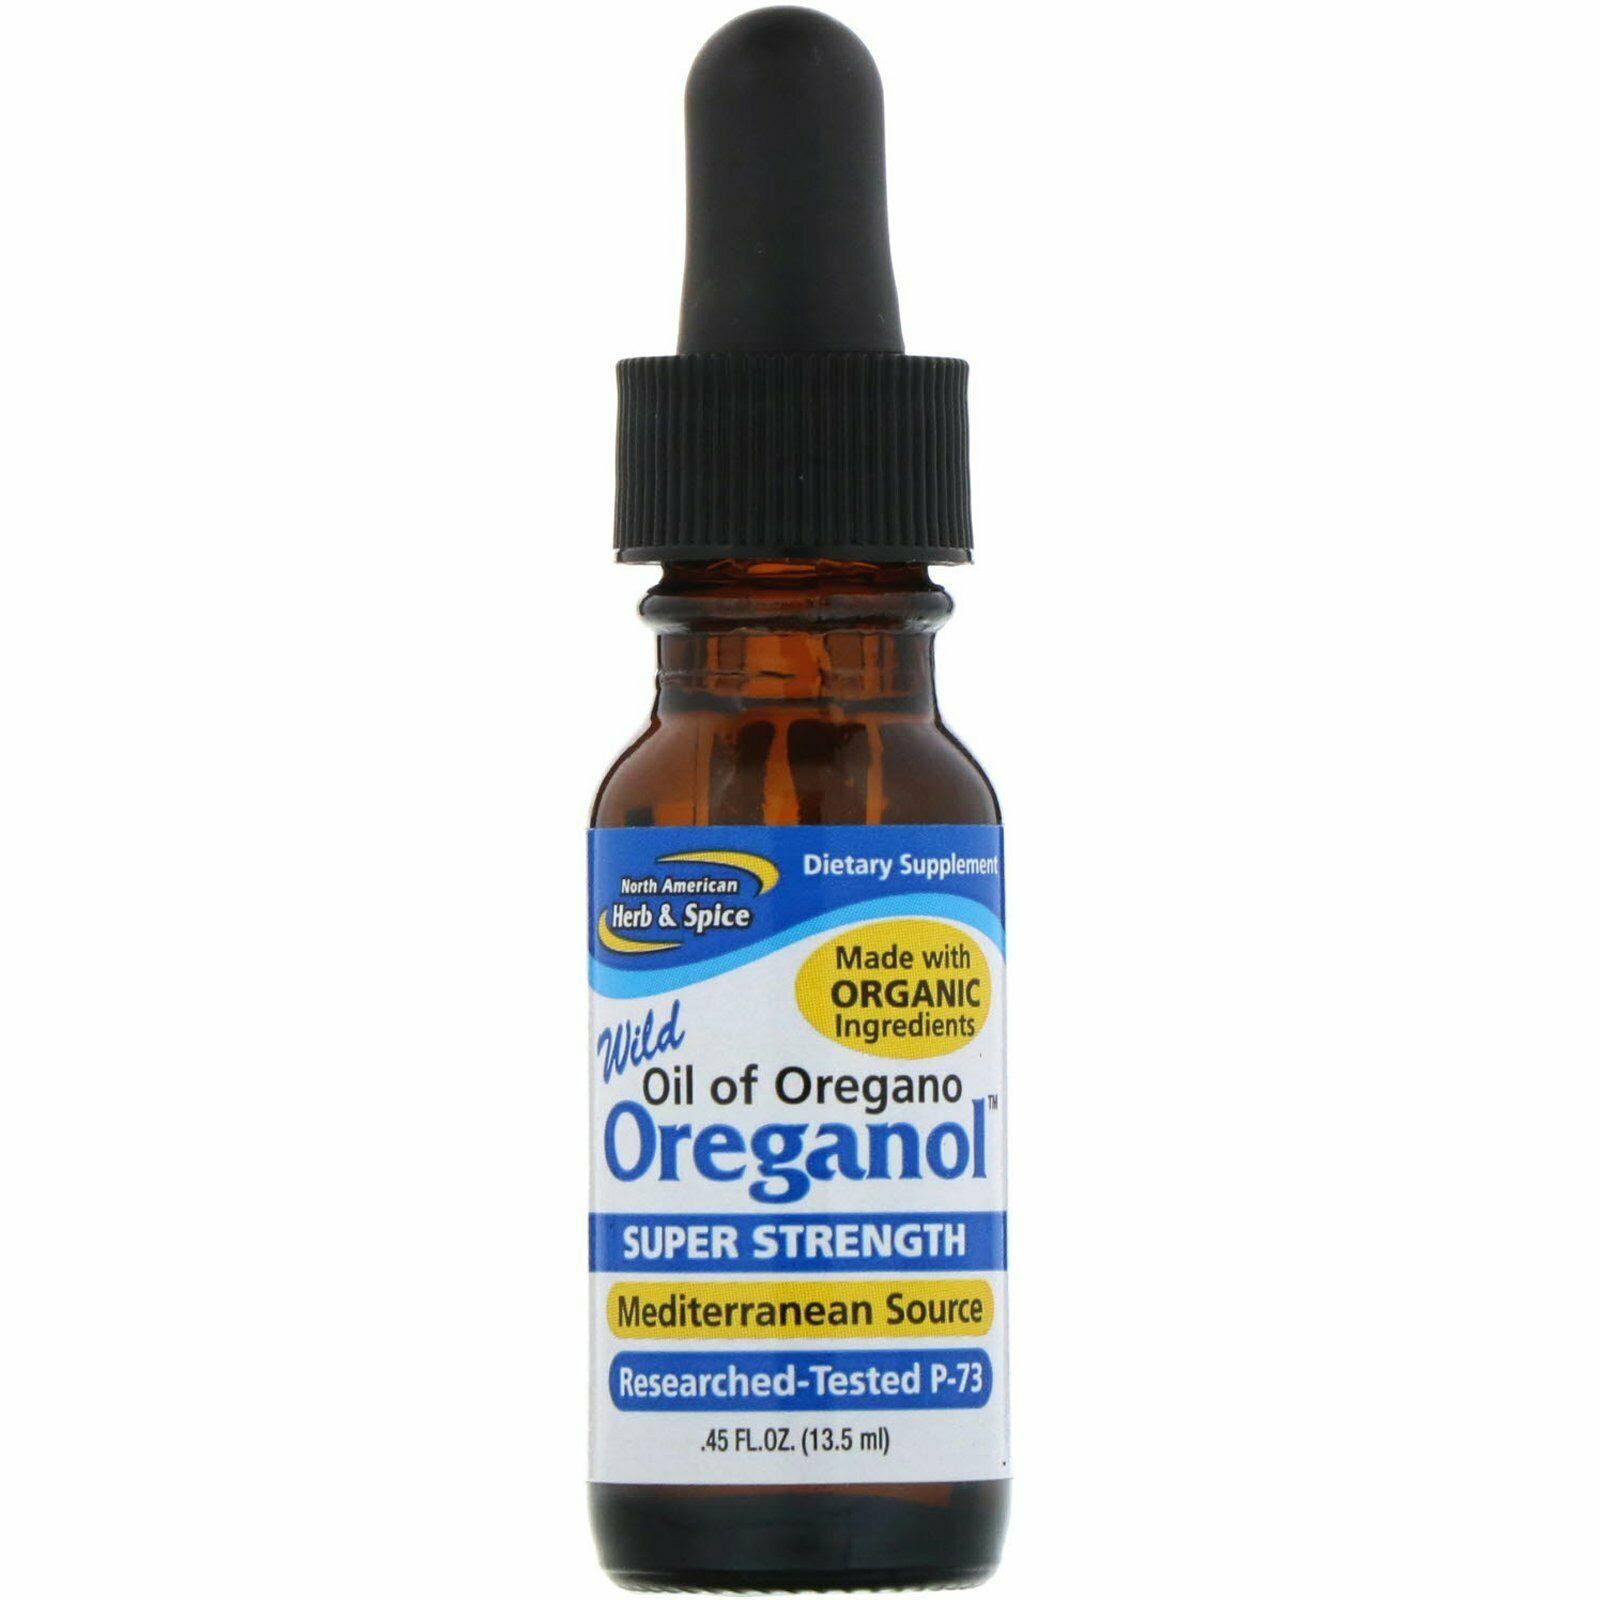 Oreganol Super Strength Oil of Oregano